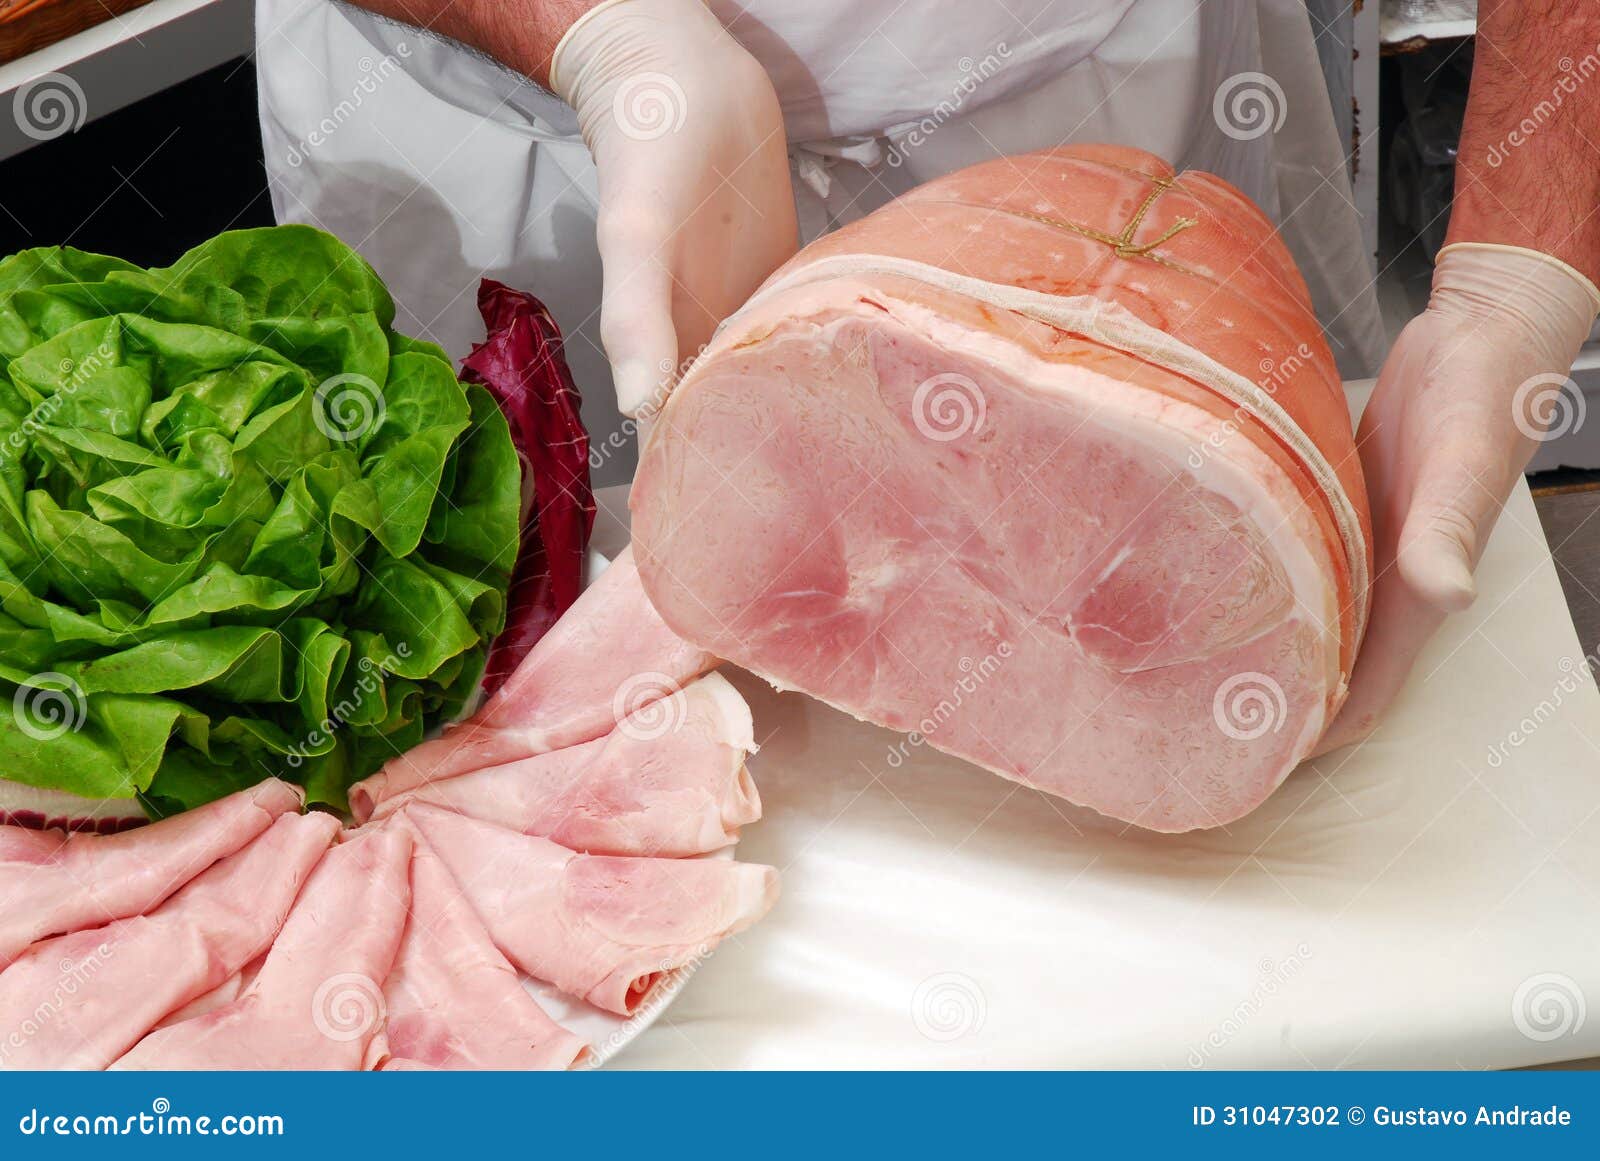 fresh ham.